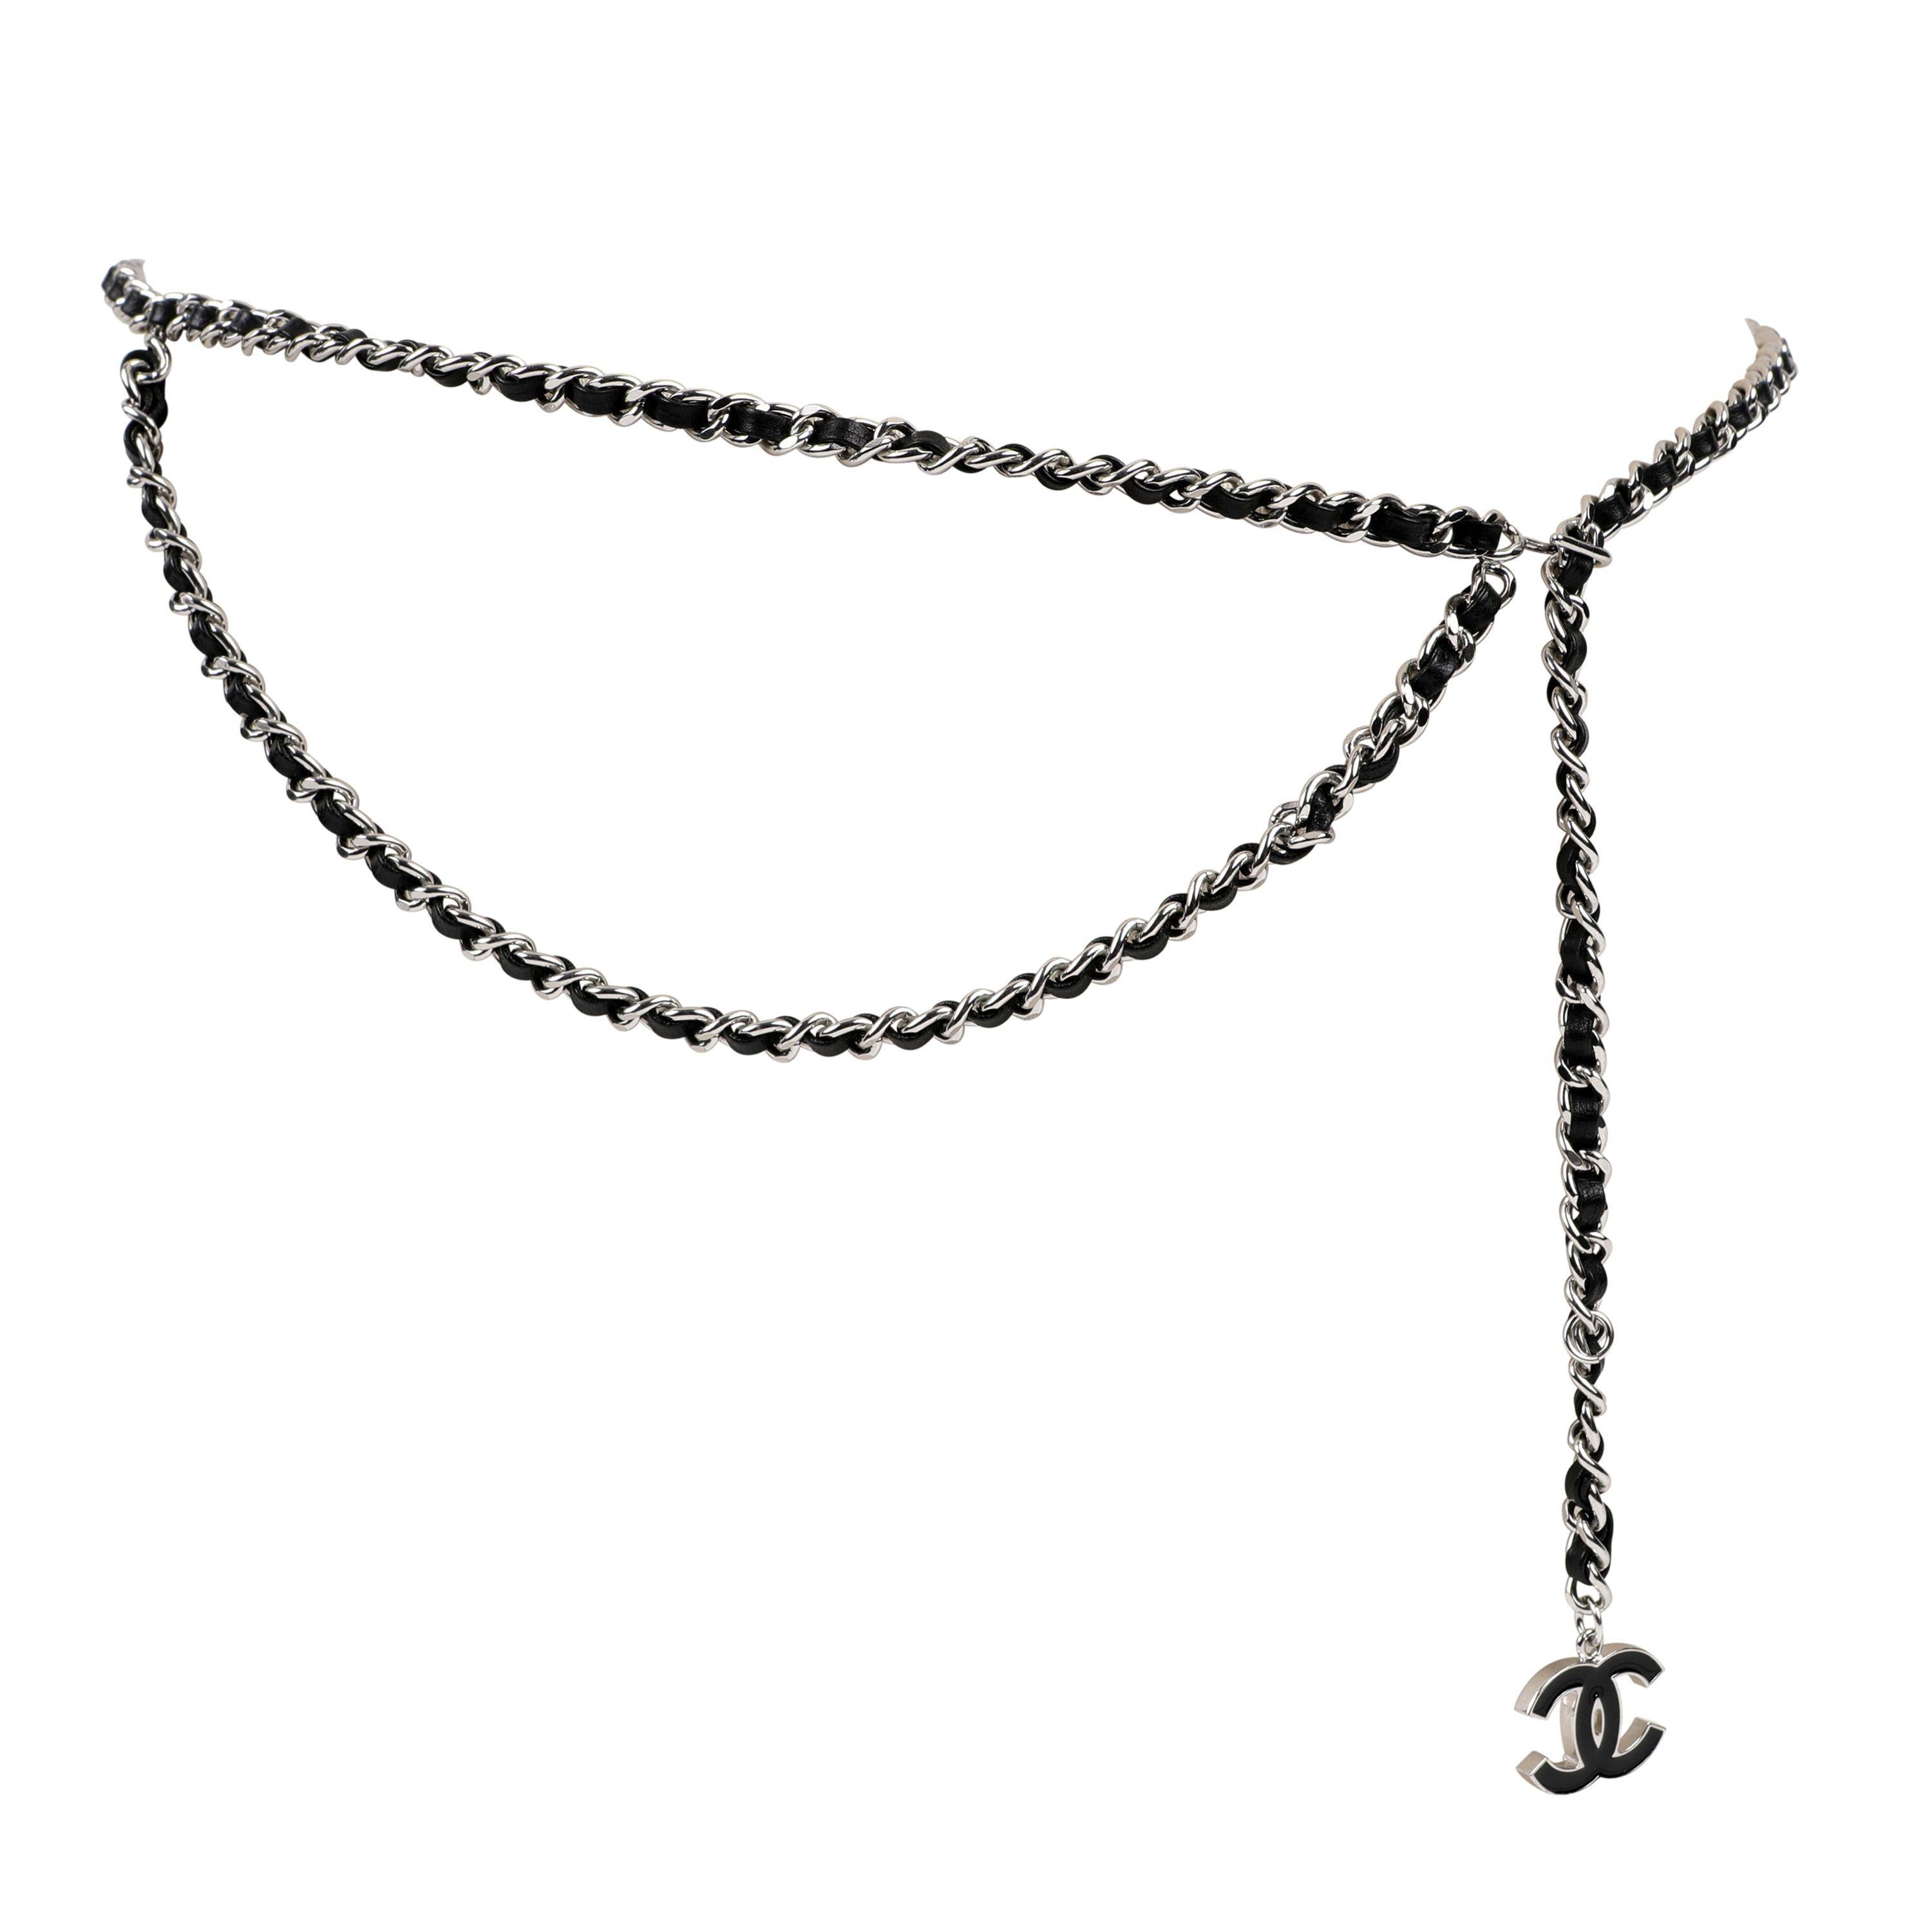 Cette authentique ceinture en cuir noir et chaîne argentée de Chanel est en excellent état.  Véritable classique, ce modèle à chaîne drapée est polyvalent et toujours chic.
Le cuir noir est entrelacé avec une chaîne à maillons argentés.  Un CC